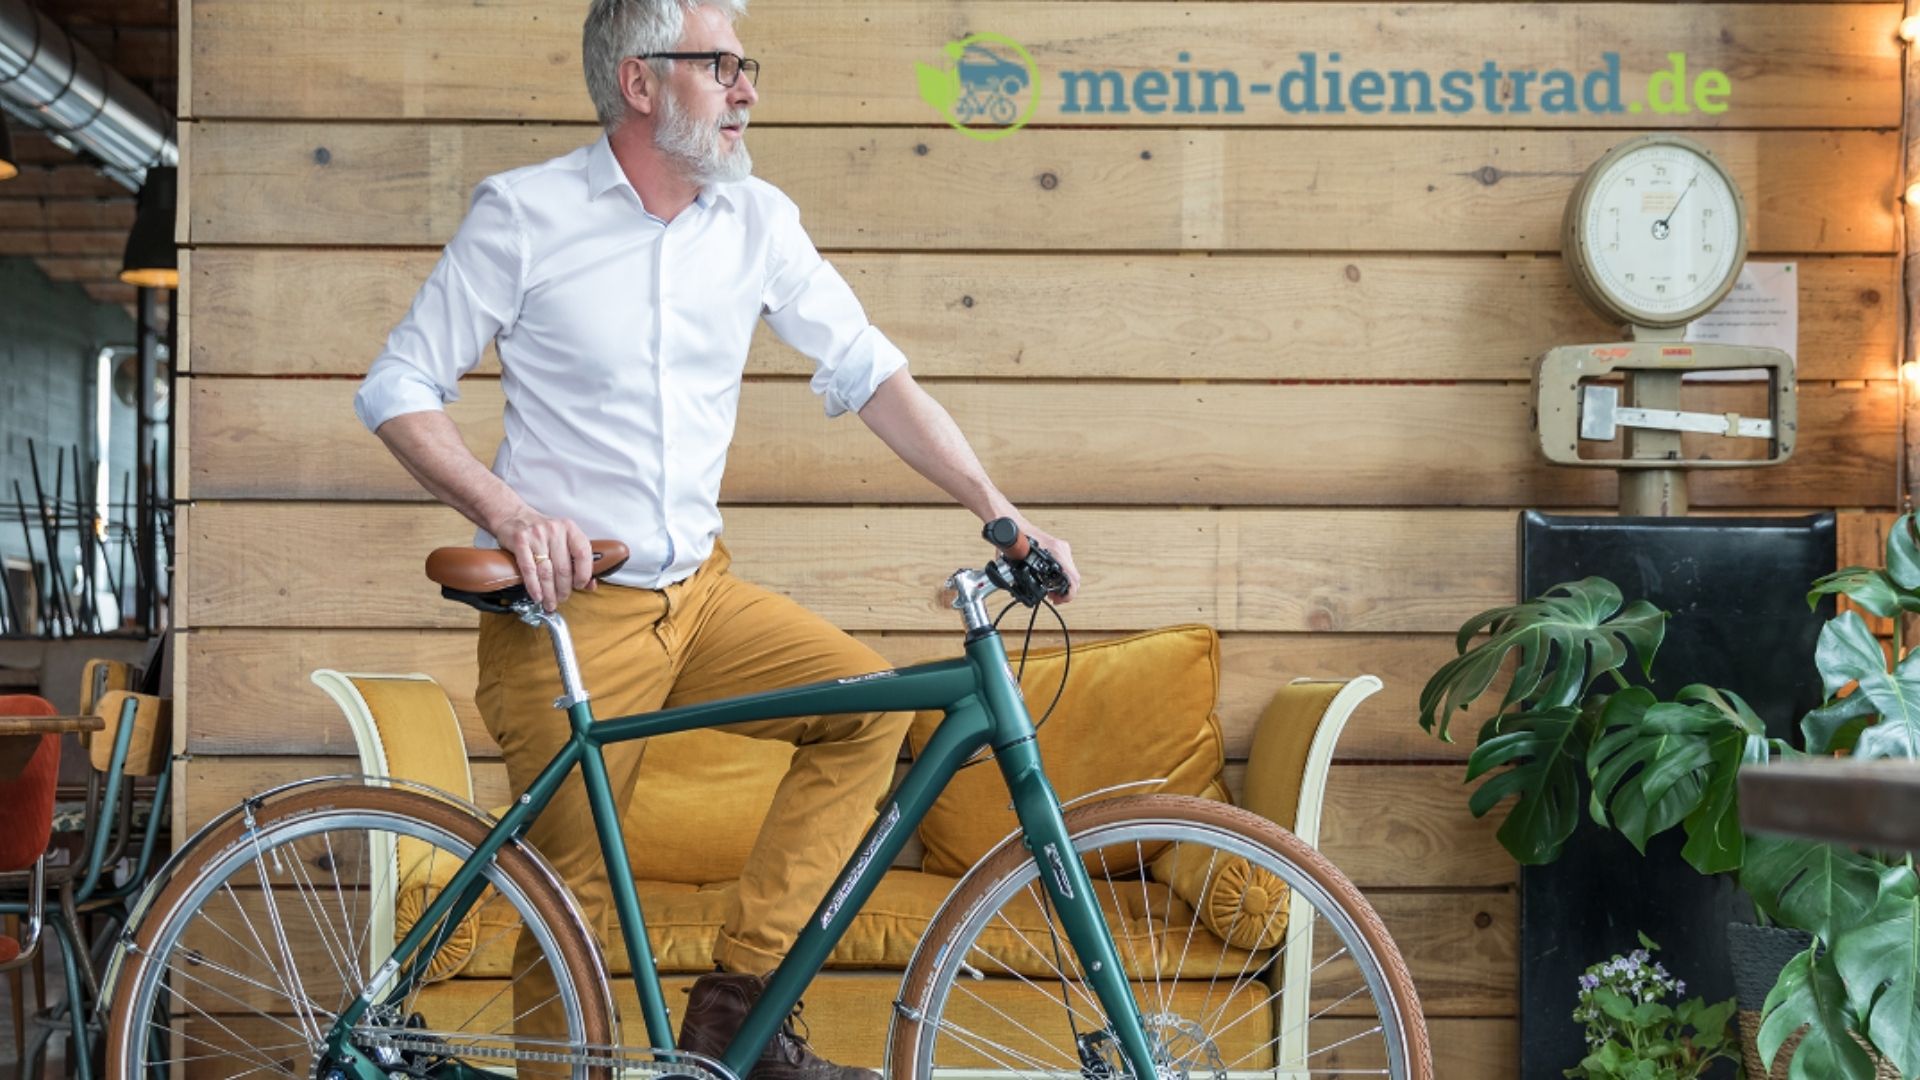 Dein Dienstrad Mann mit Fahrrad vor Holzwand